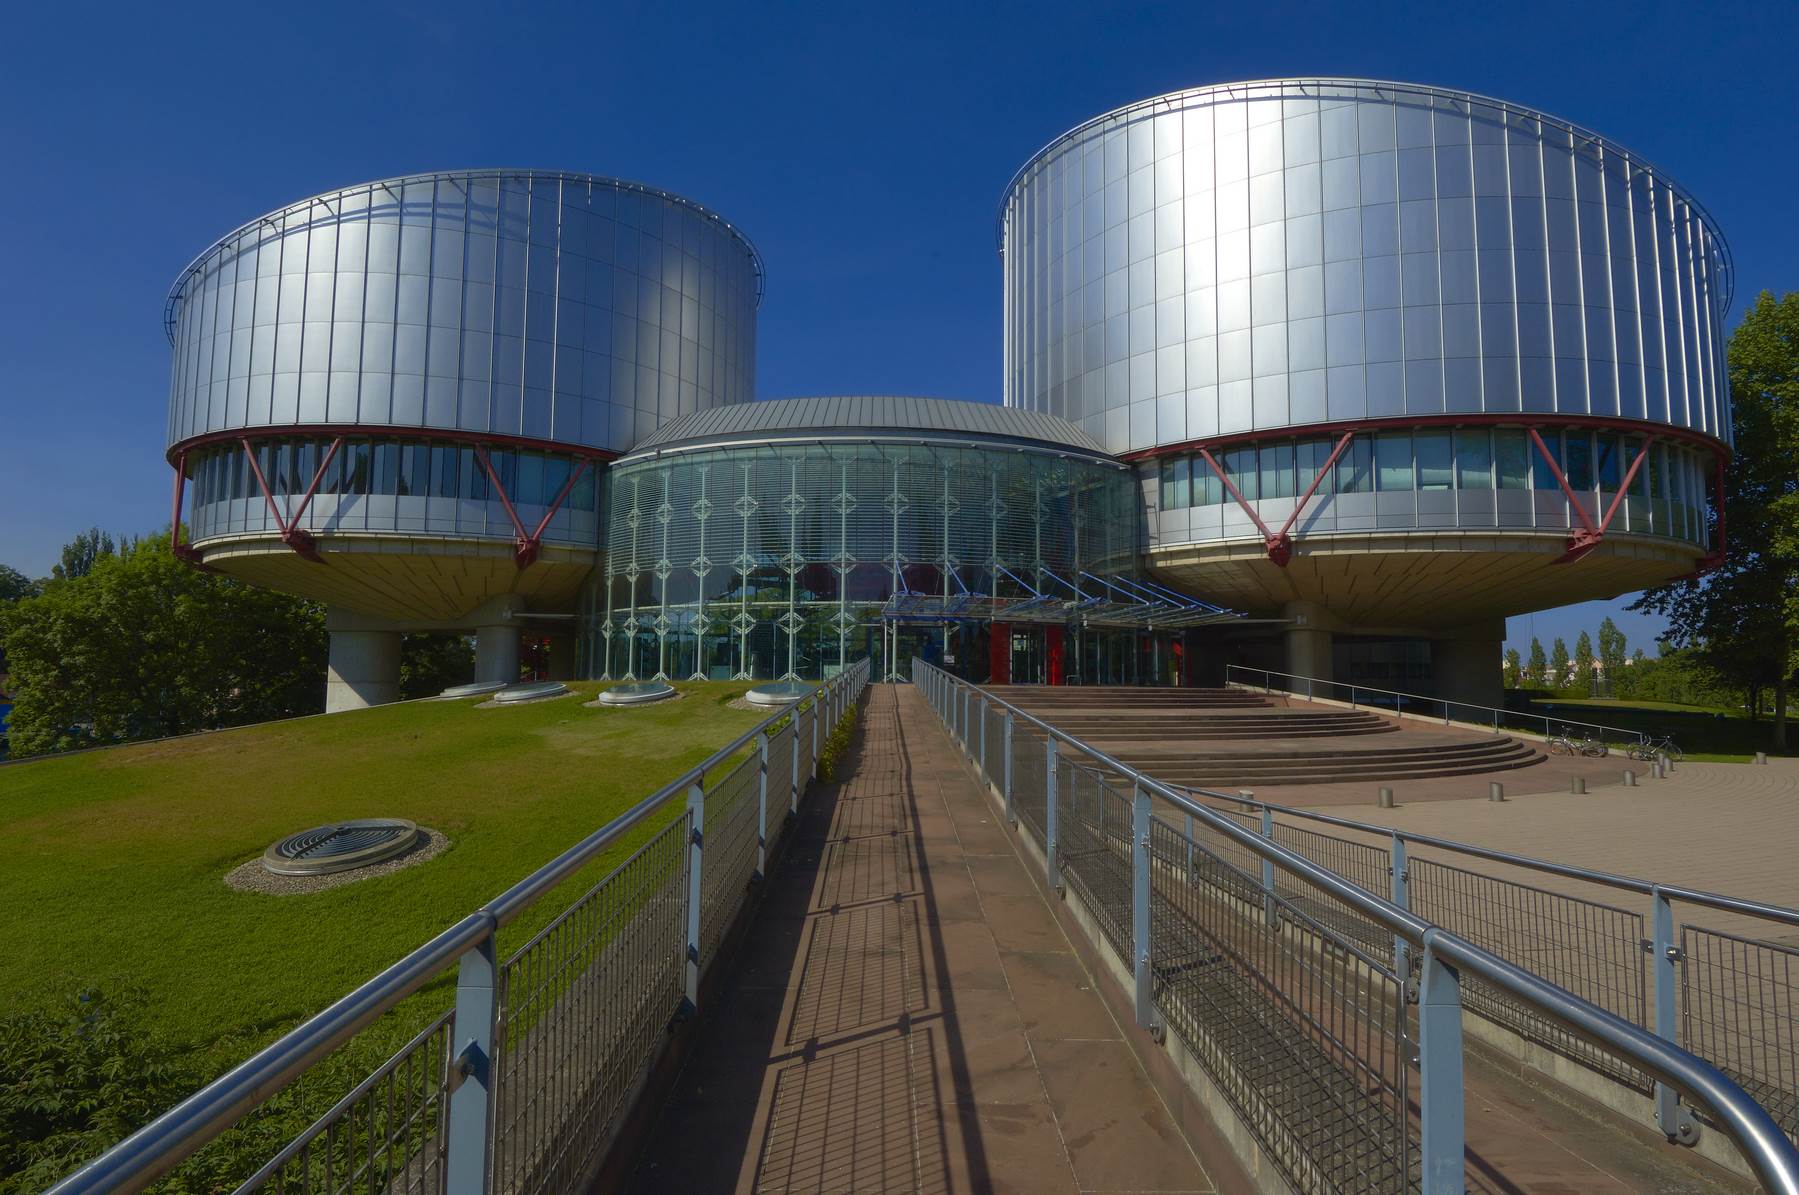  Europski sud za ljudska prava 